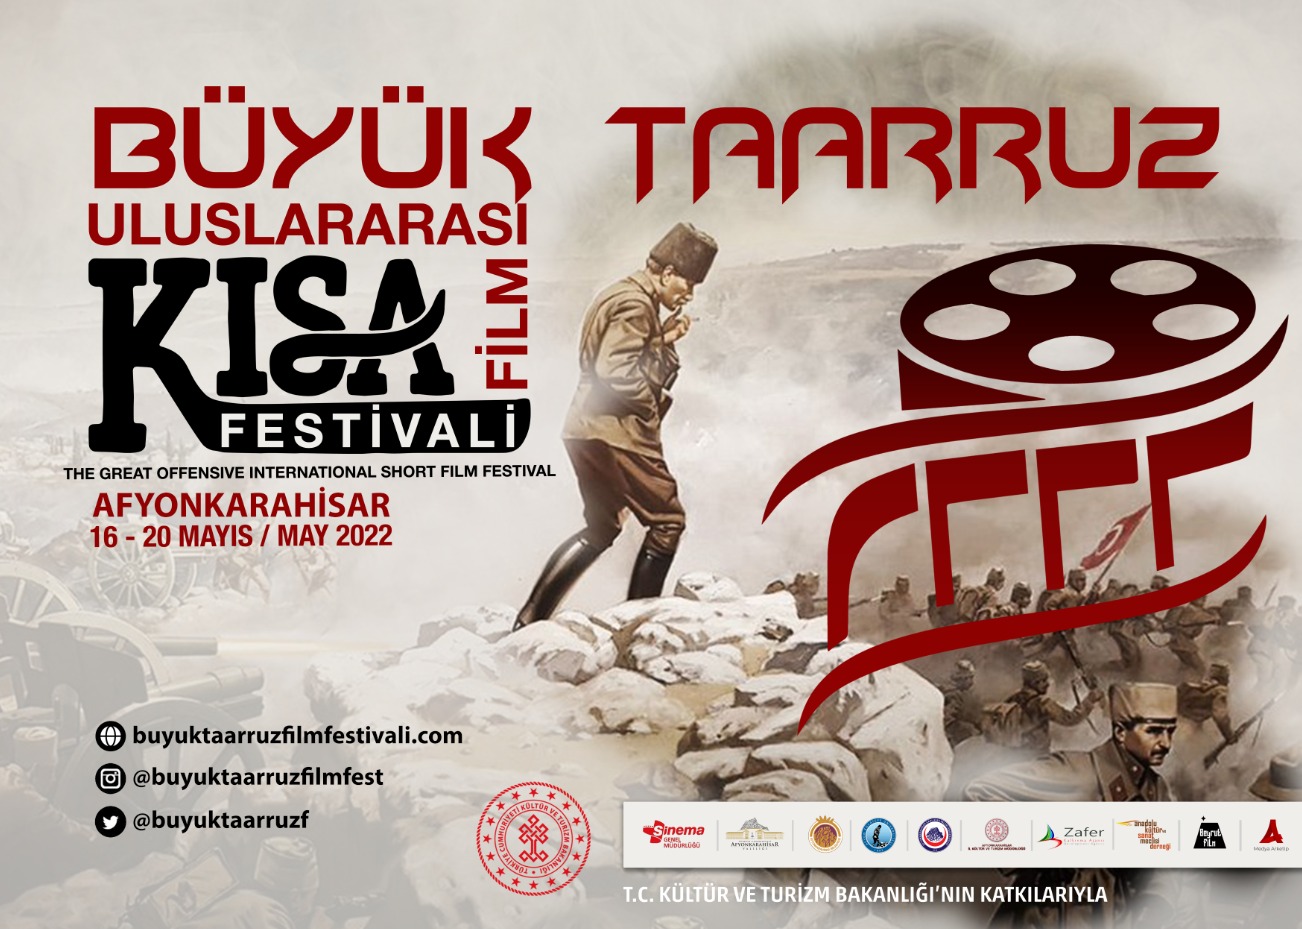 Büyük Taarruz Uluslararası Kısa Film Festivali etkinlik programı